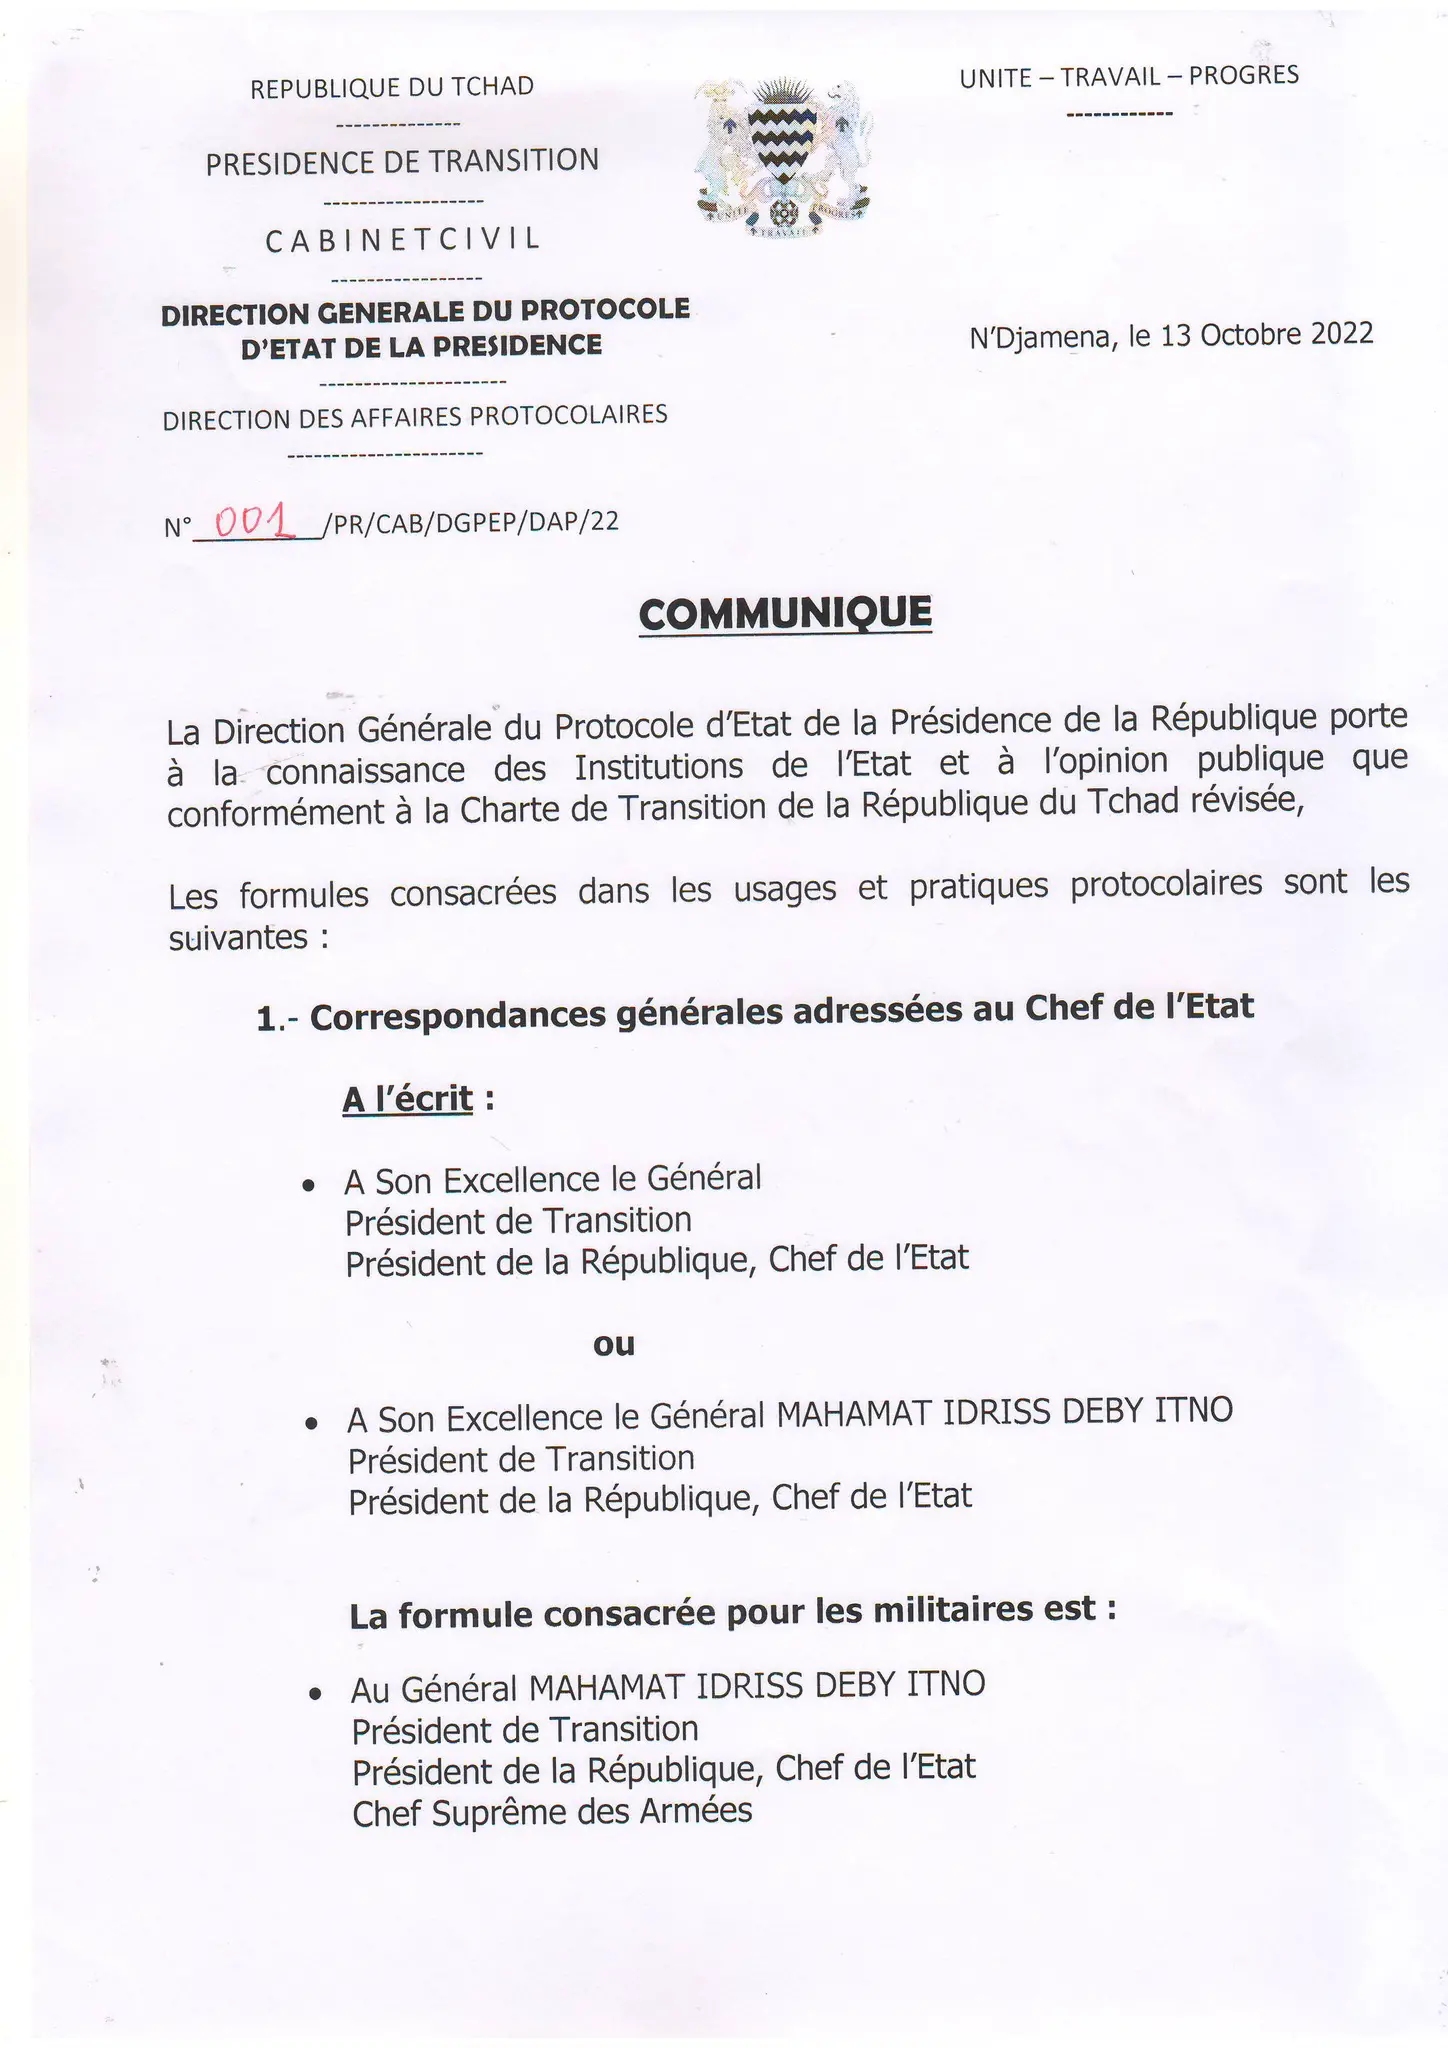 Tchad : le Protocole d'État actualise les formules protocolaires pour s'adresser au président